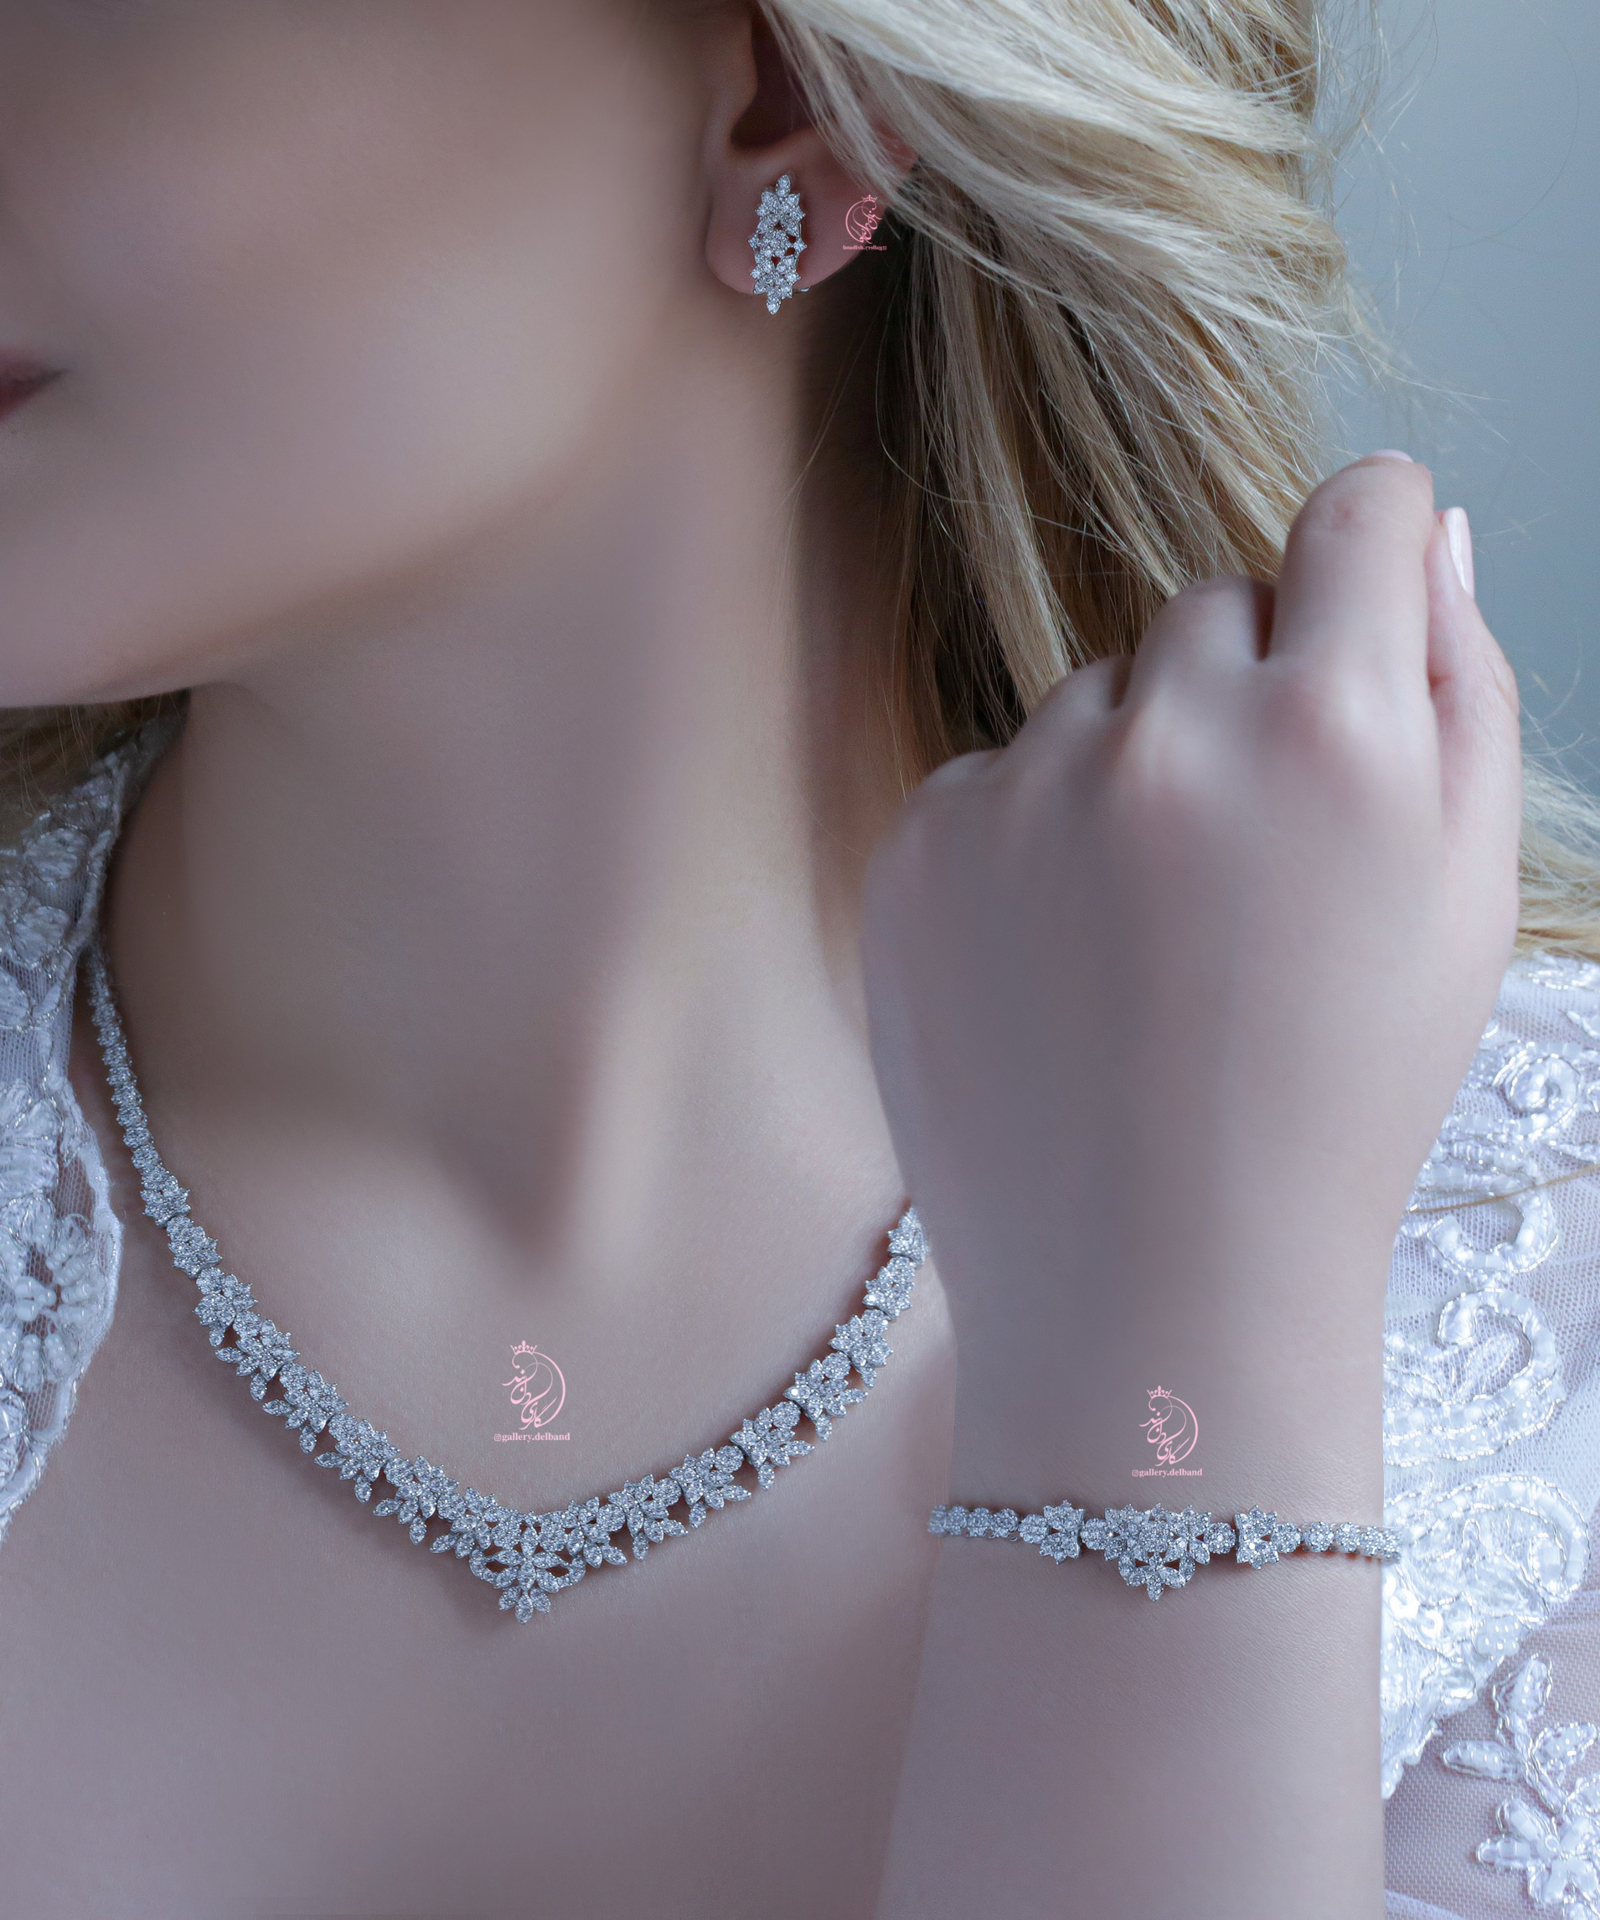 💎سرویس(گردنبند ، گوشواره و دستبند ) جواهری شیک و زیبا نقره عیار ۹۲۵ با نگینهای درخشان با روکش طلا سفید با قفل جواهری